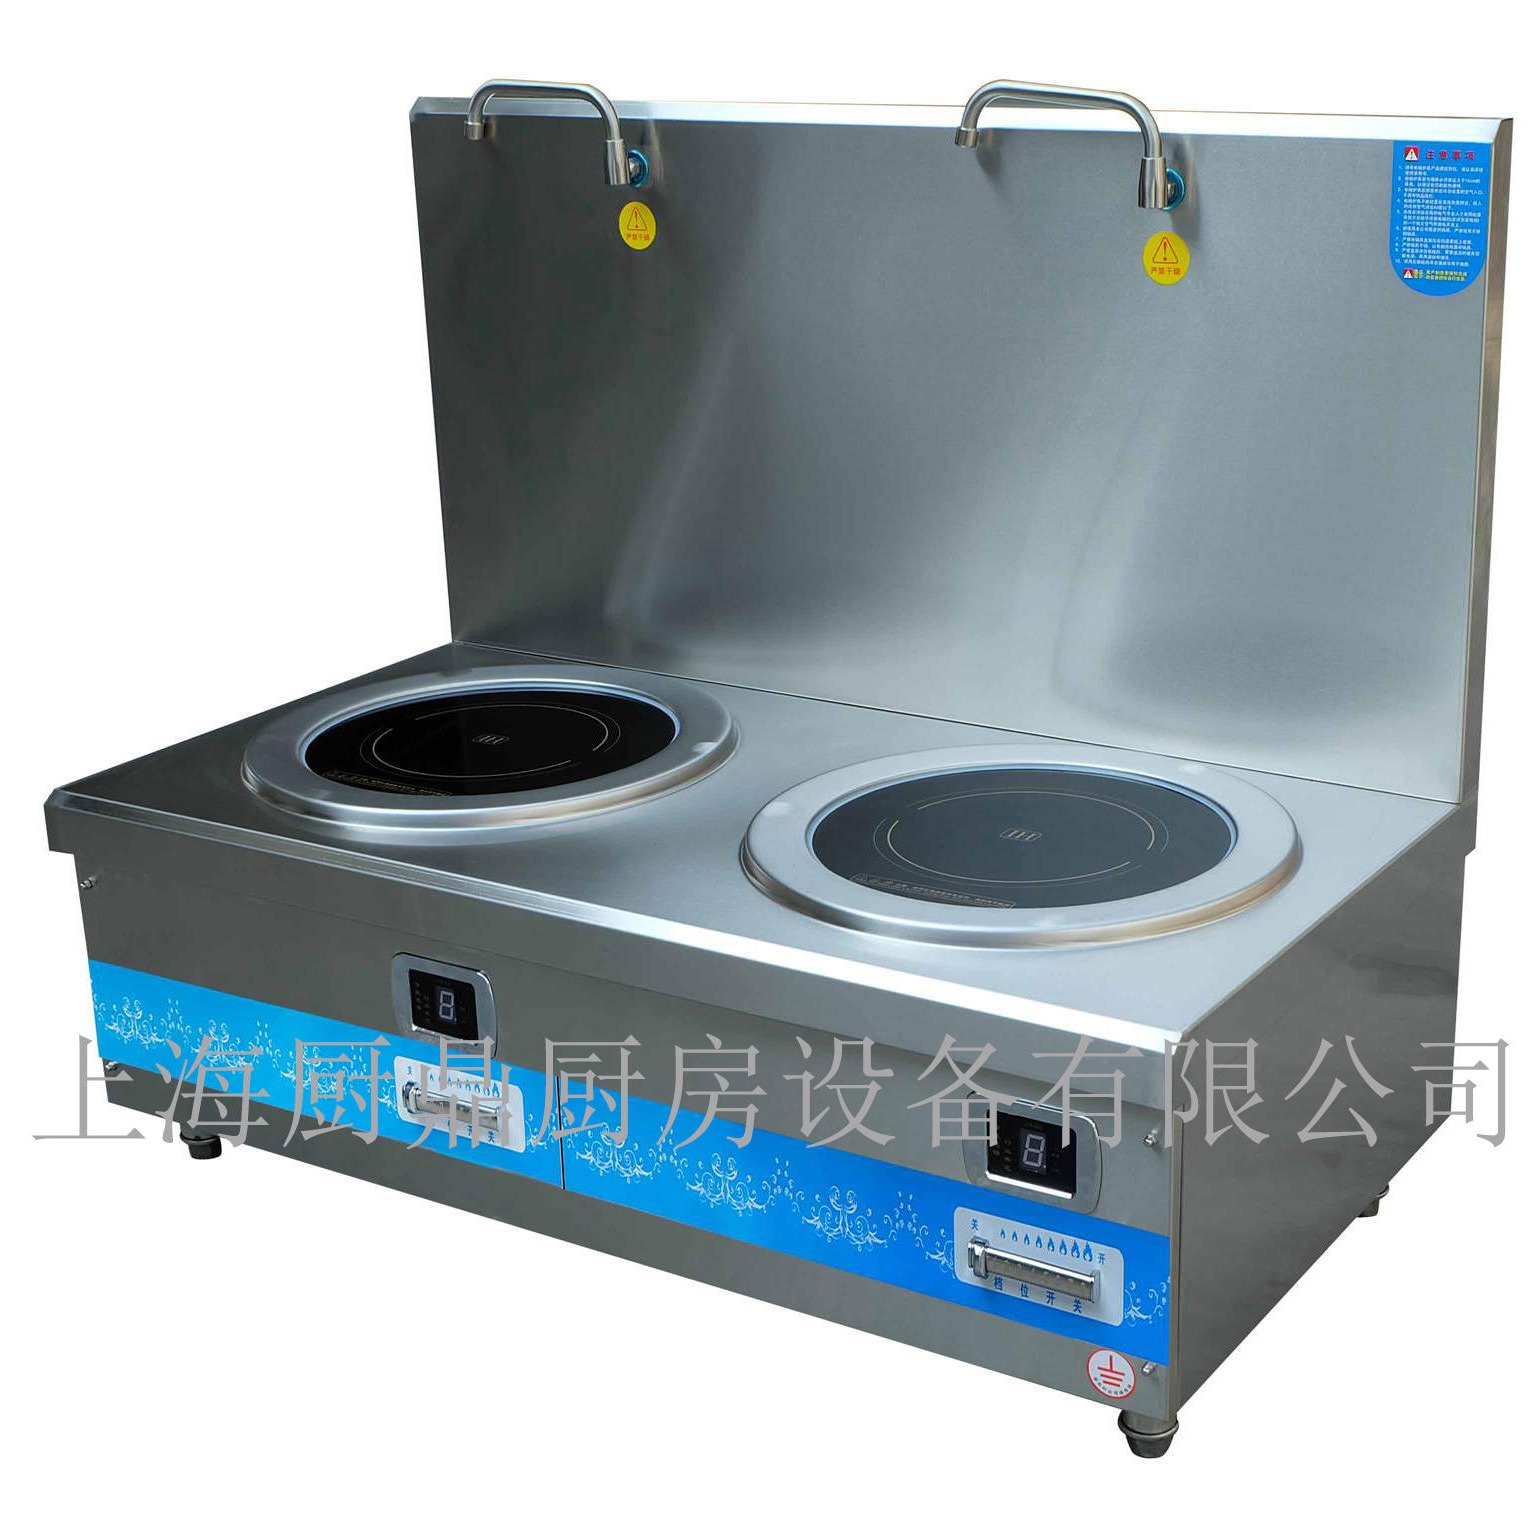 双头电磁煲汤炉 商用电磁灶 食堂厨房设备 商用厨房设备 送货上门质保两年